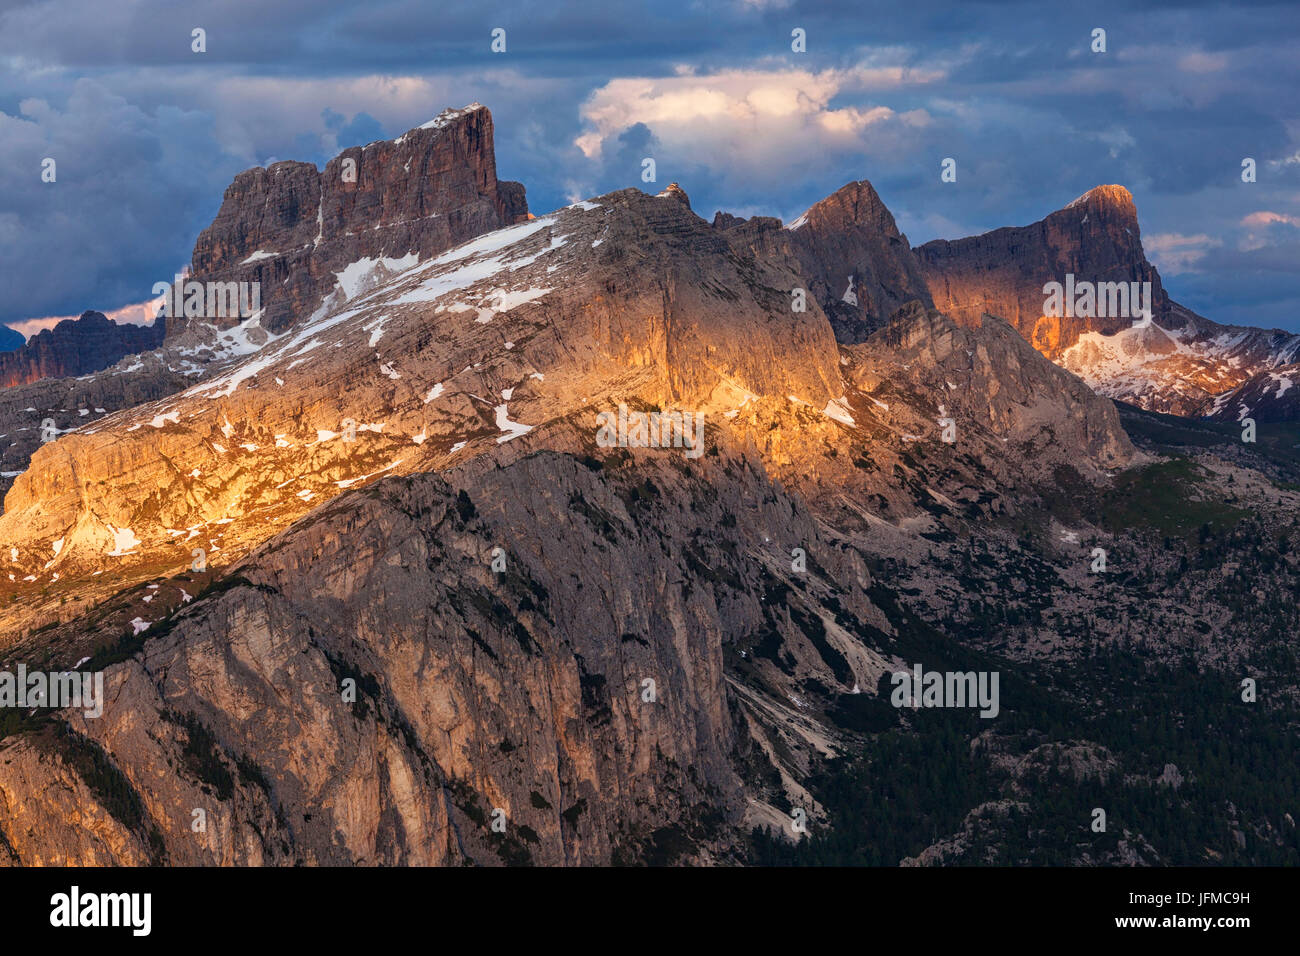 Il gruppo Nuvolao da Setsass, Ampezzo Dolomiti, Cortina d'Ampezzo, Belluno, Veneto, Italia, Foto Stock